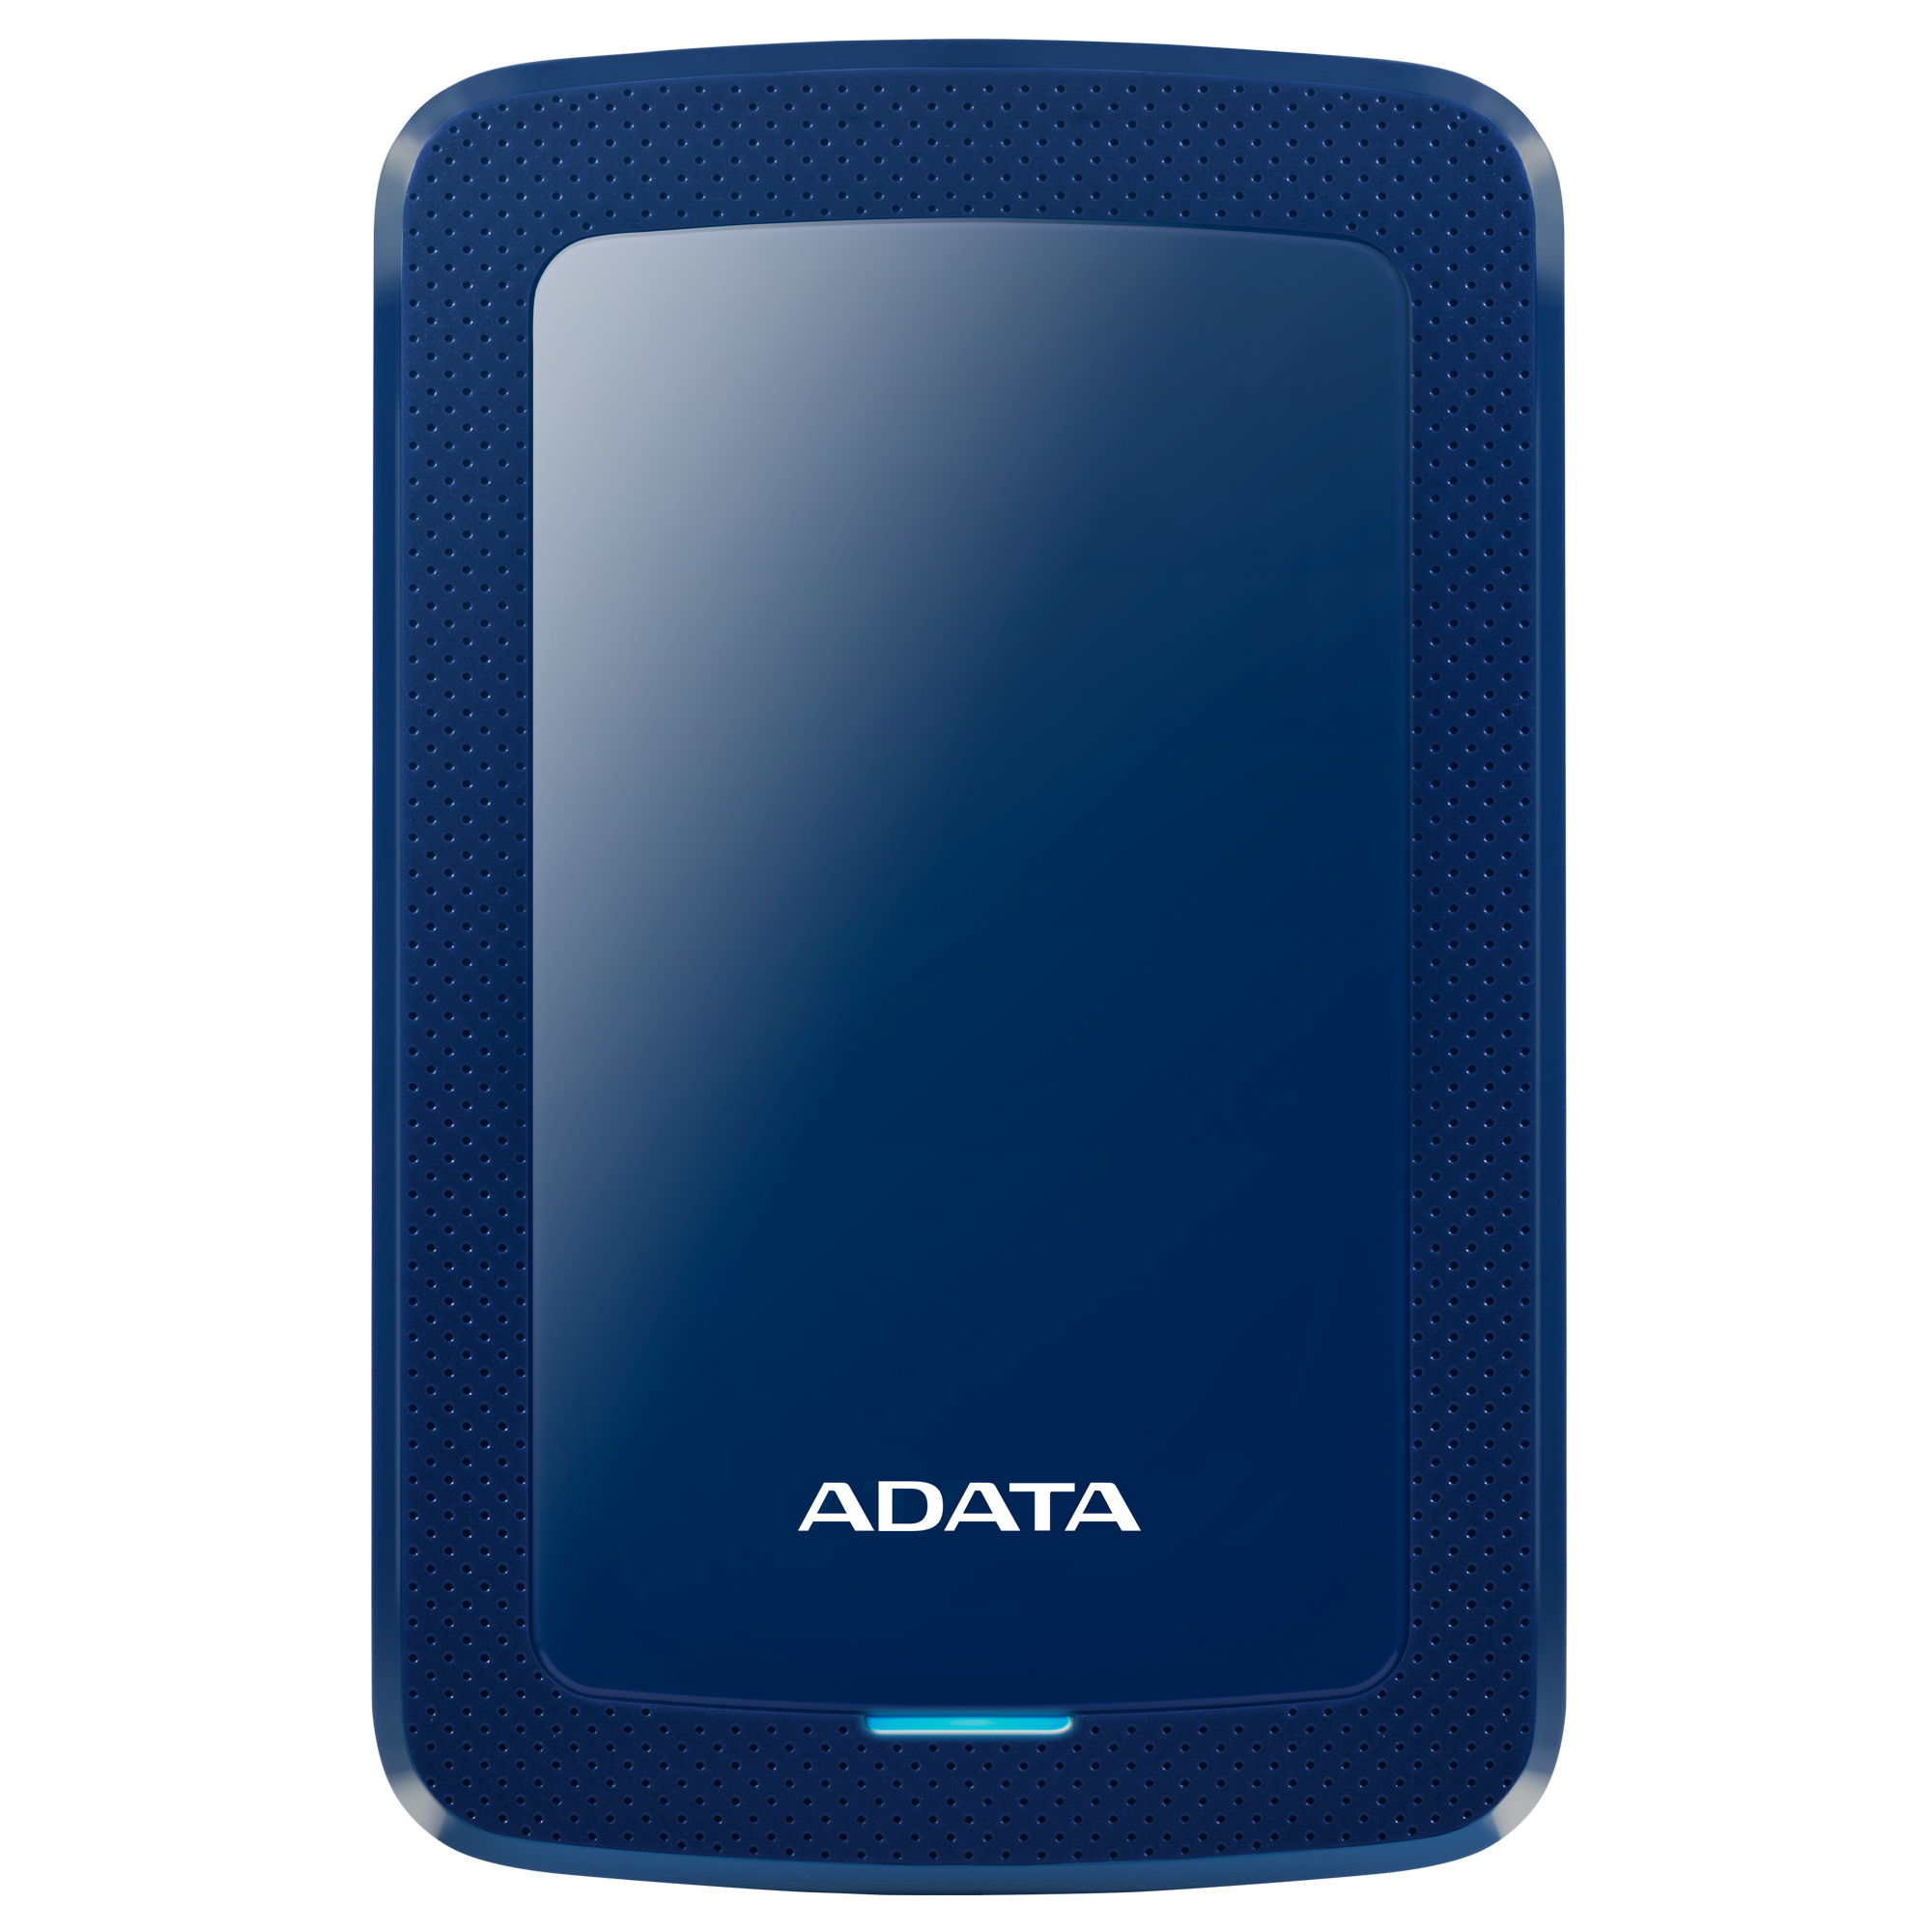 ADATA HV300 1TB ext. HDD modrý